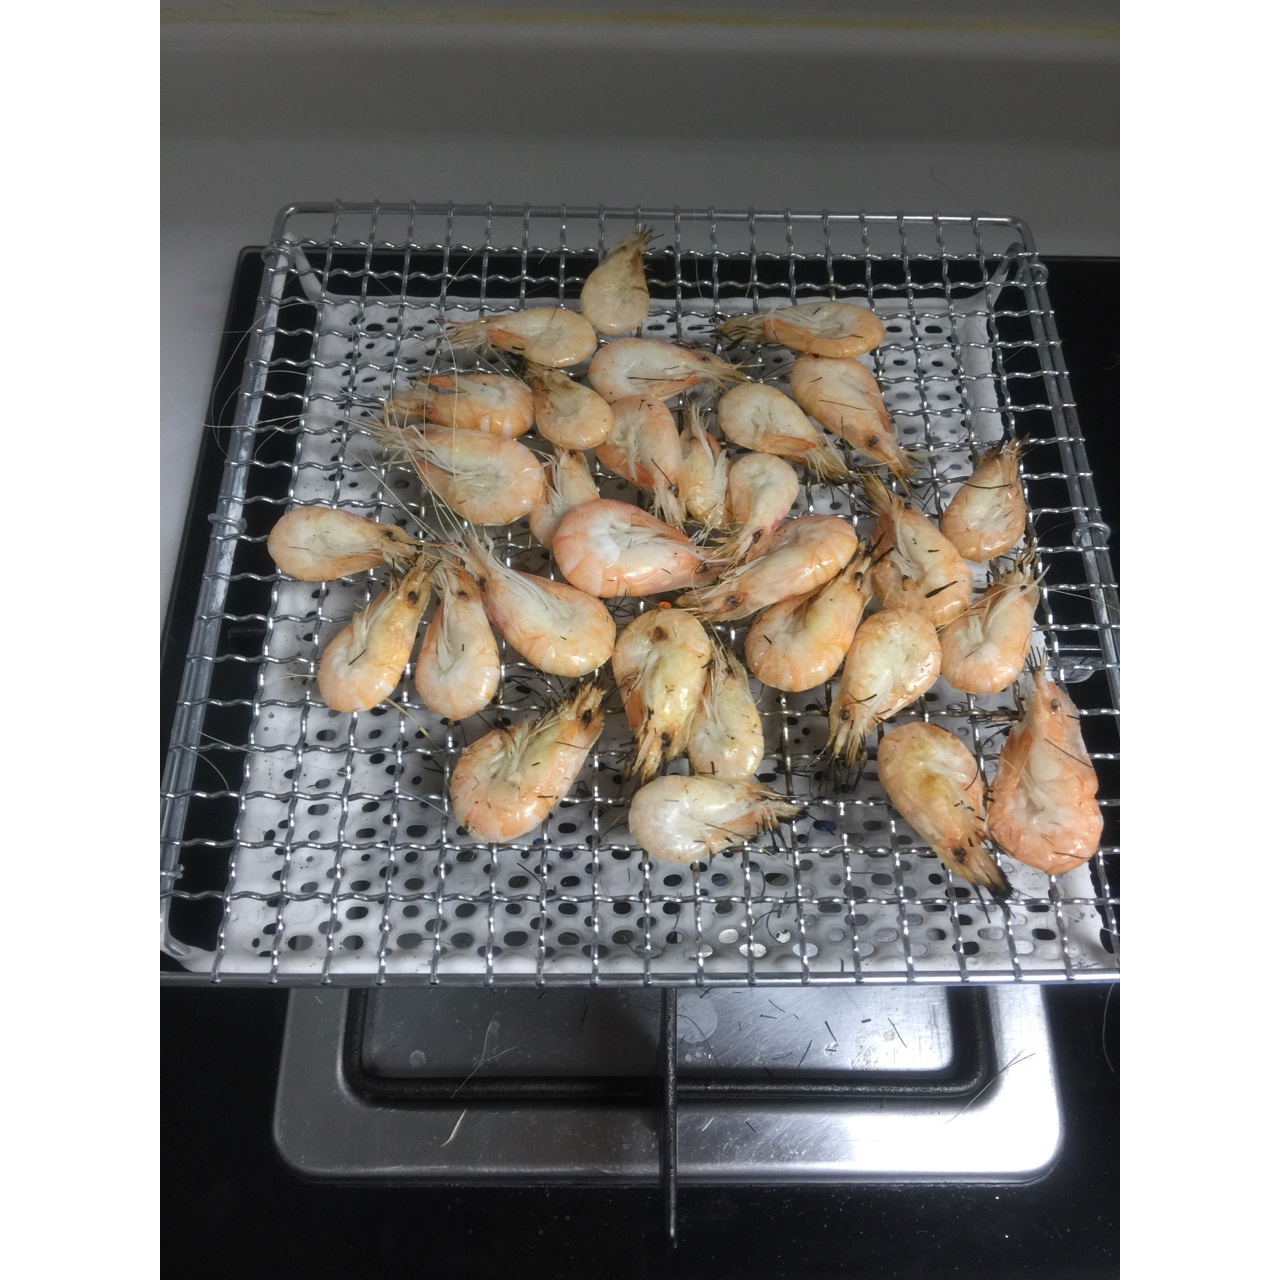 烤虾